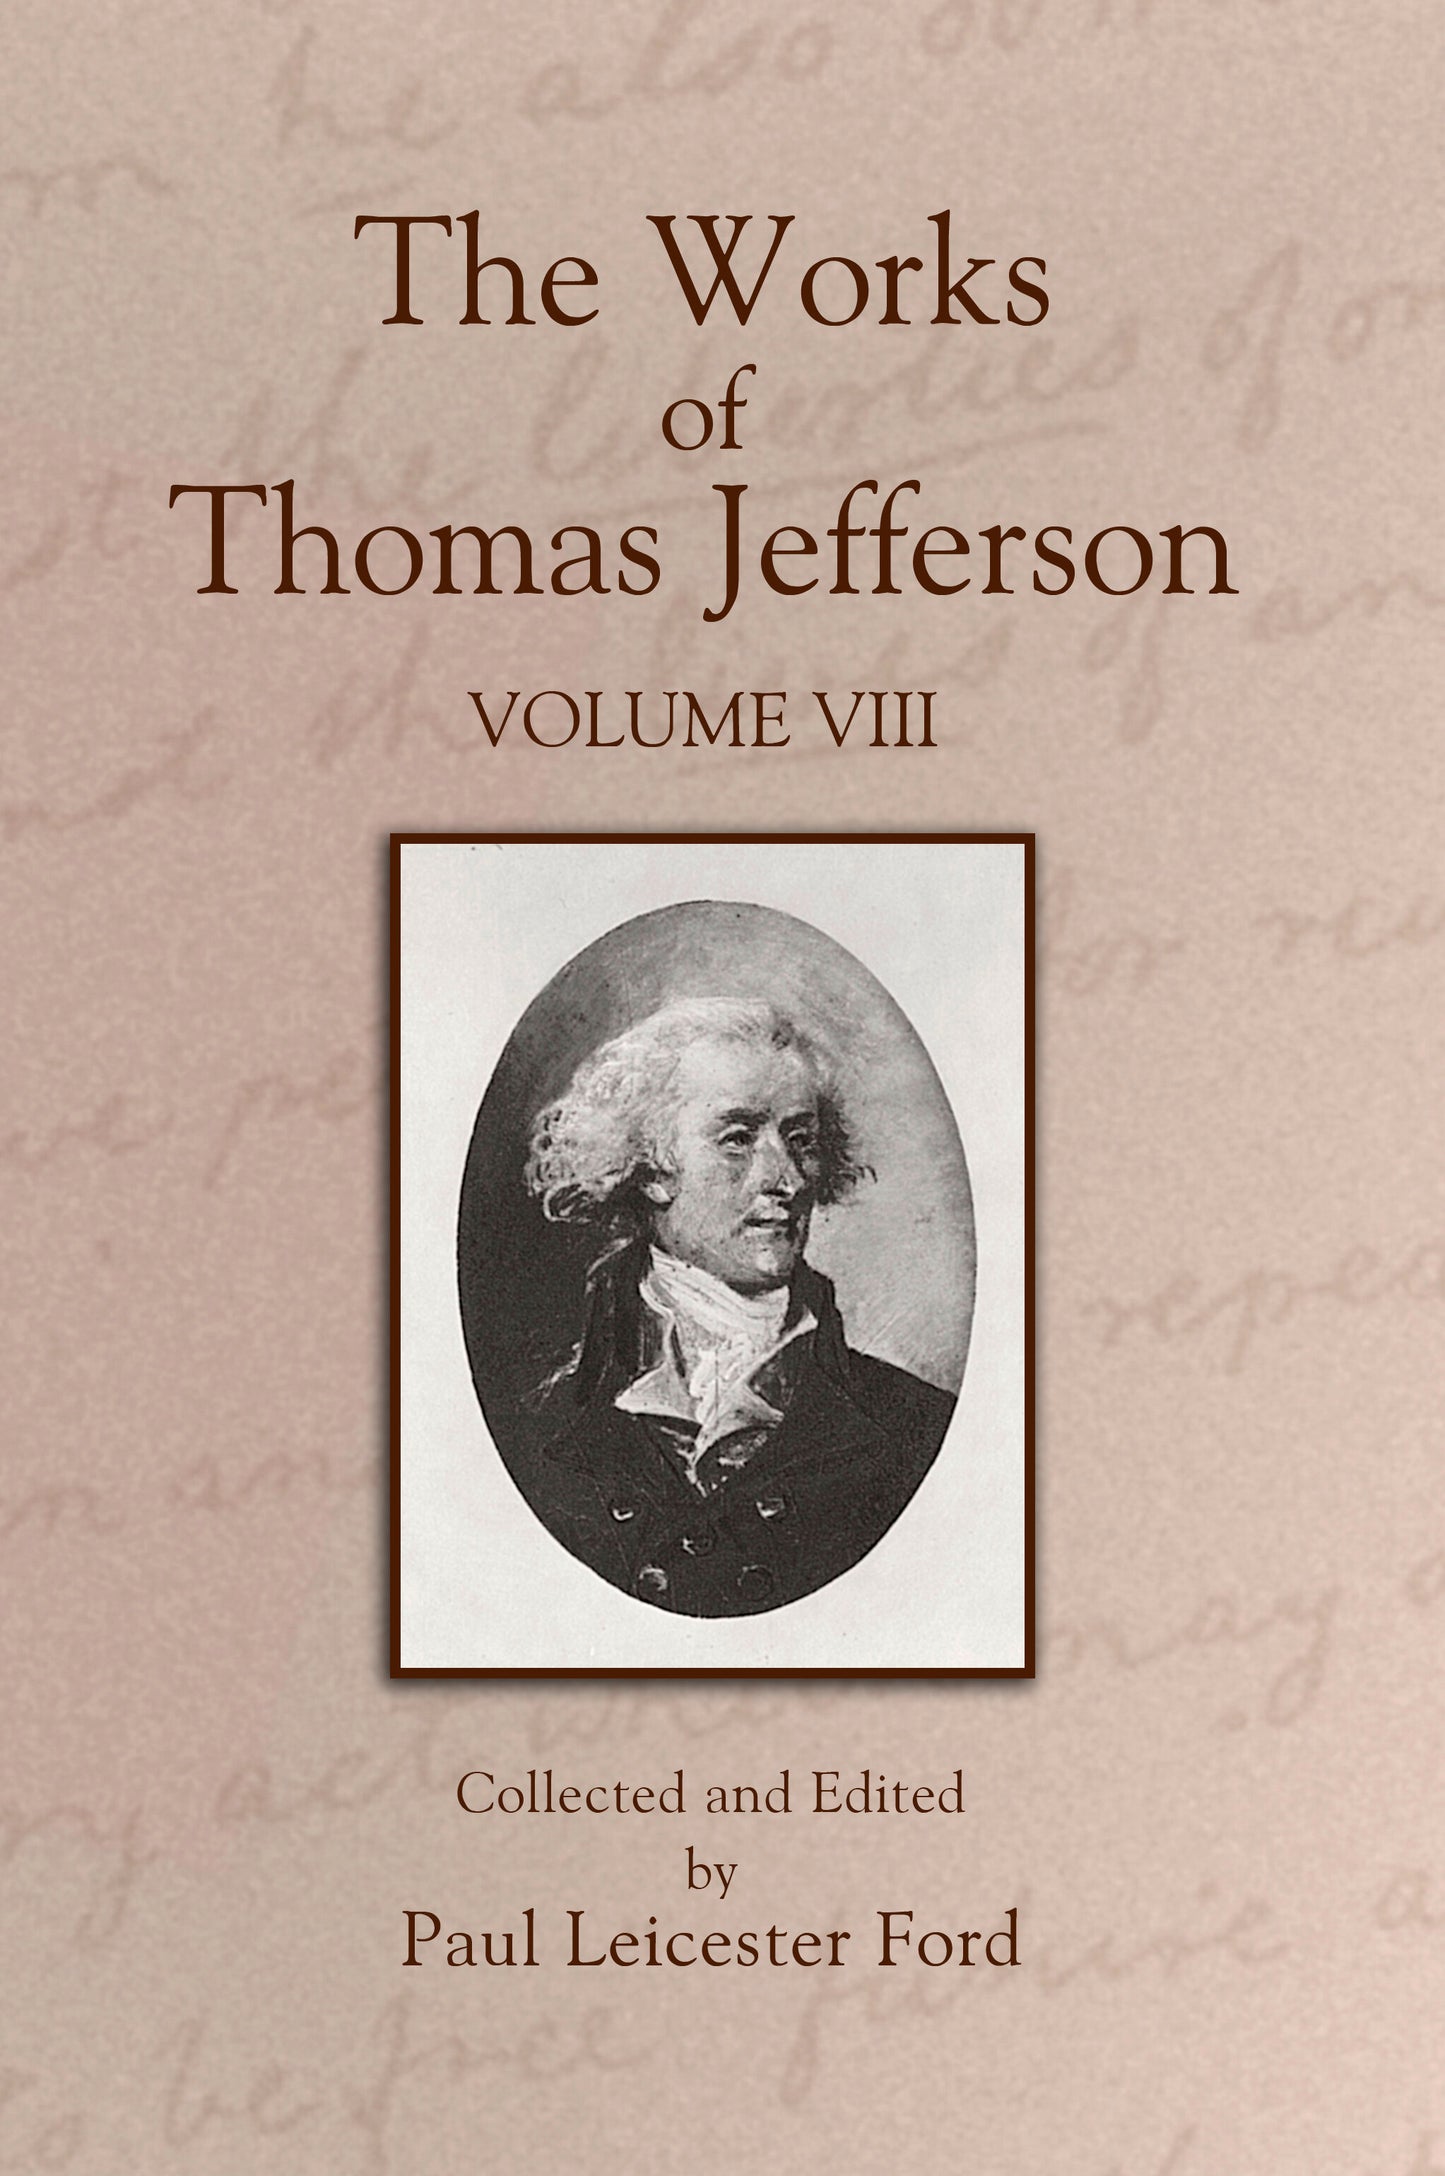 The Works of Thomas Jefferson: Volume VIII